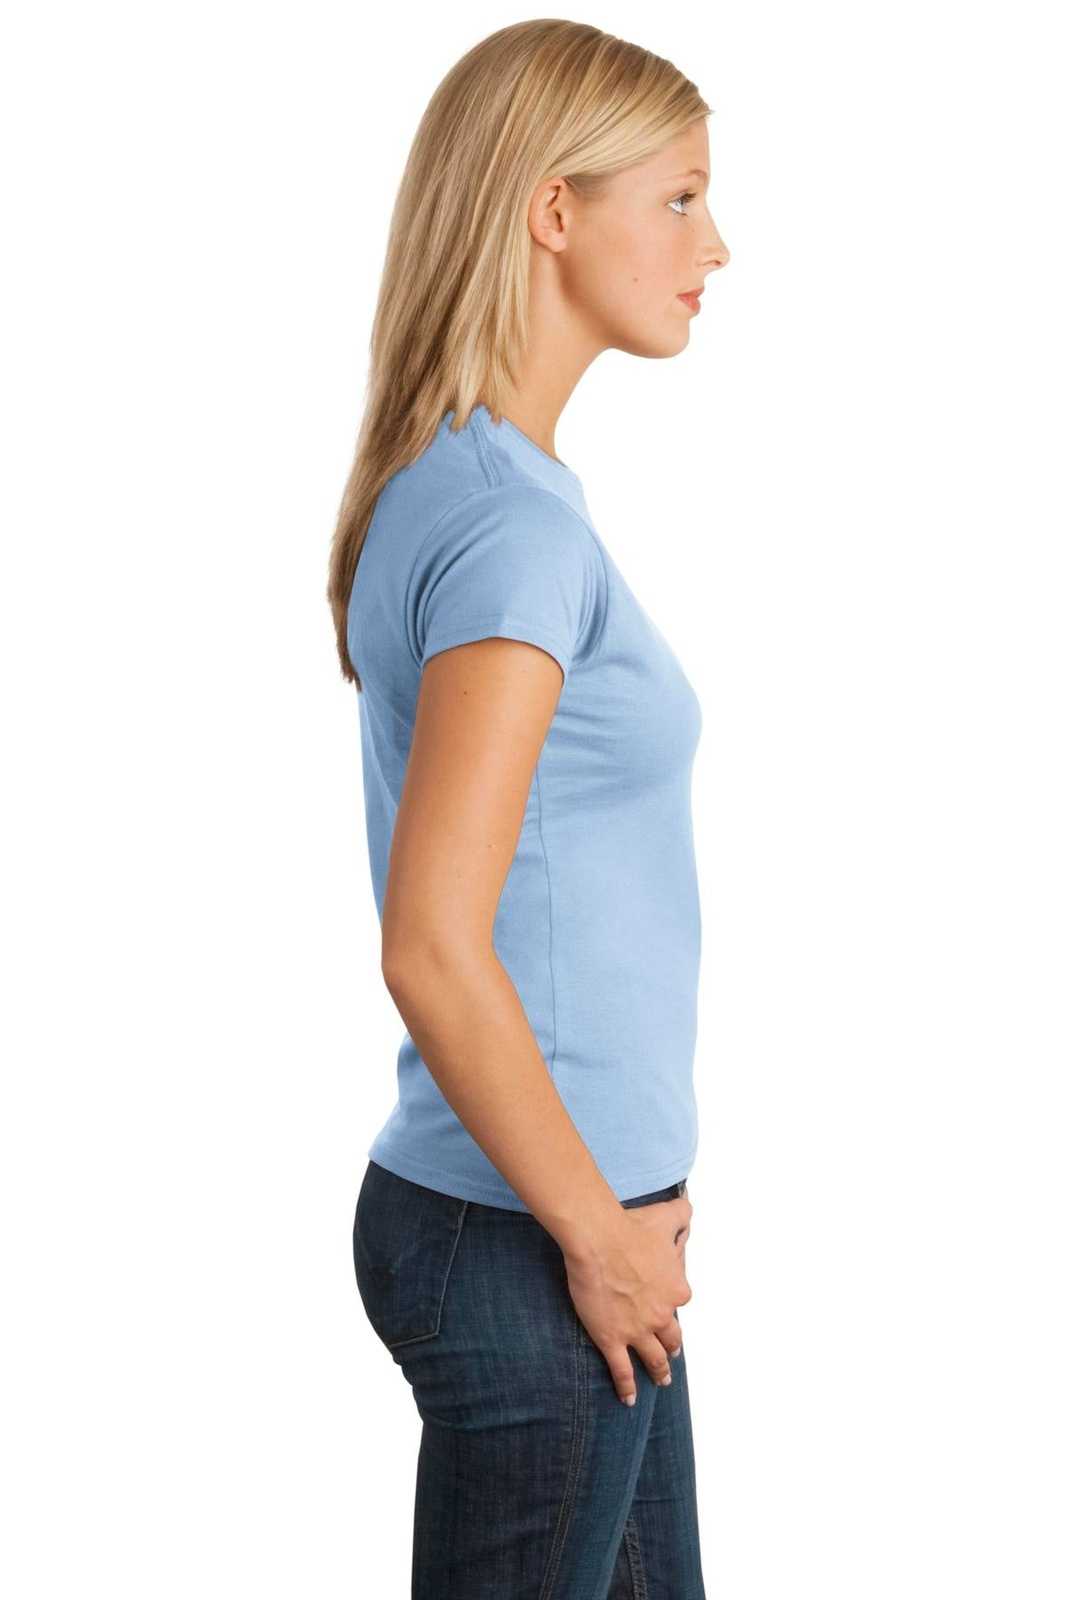 Gildan 64000L Softstyle Ladies T-Shirt - Light Blue - HIT a Double